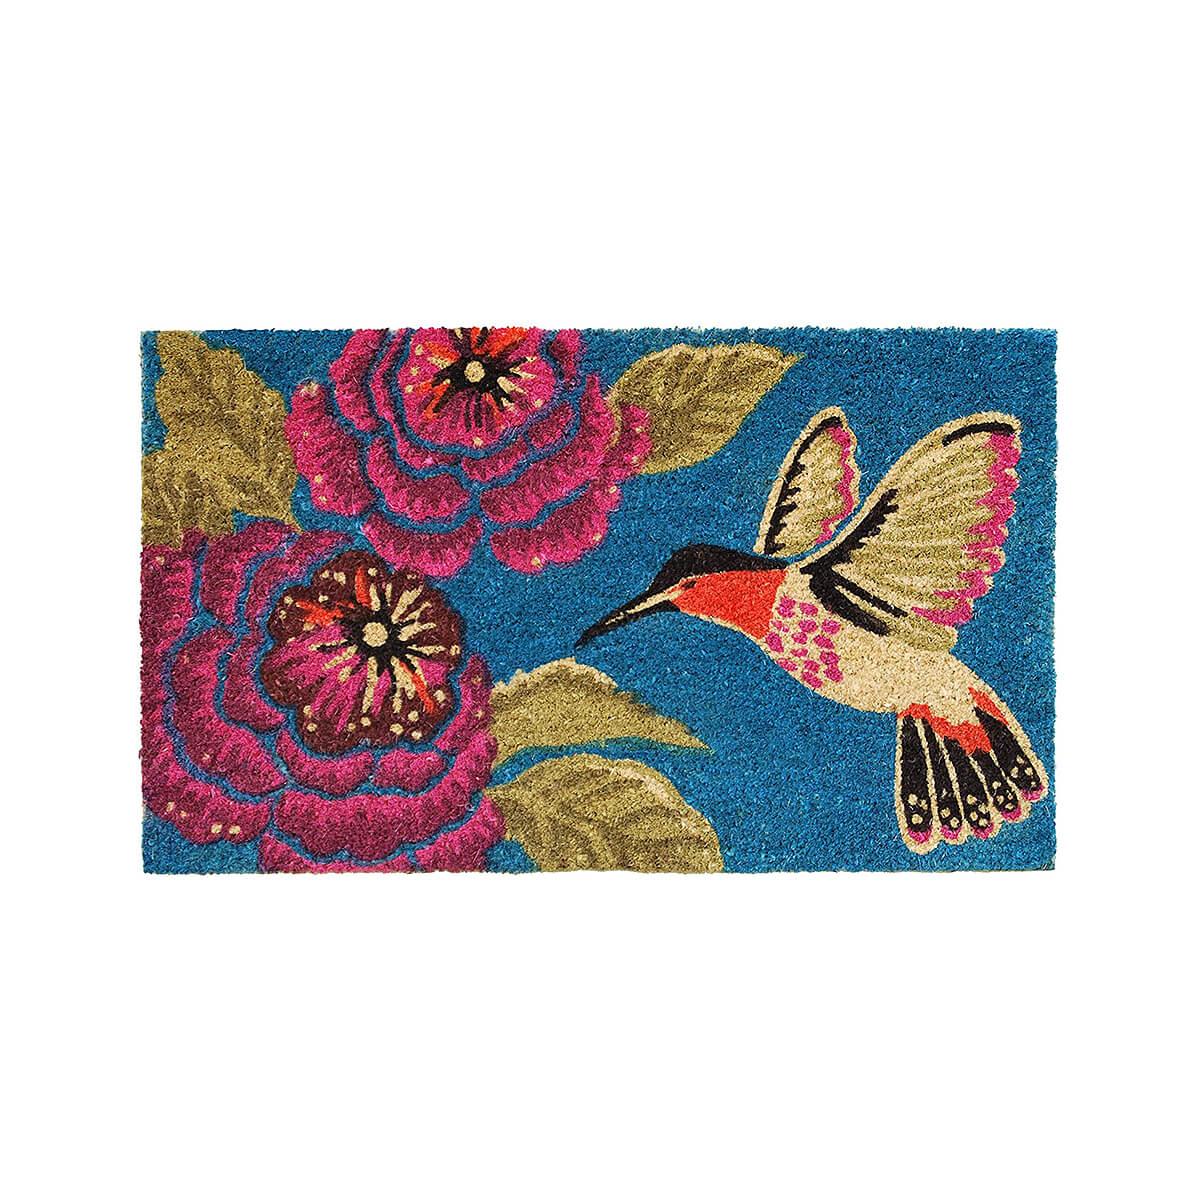  Hummingbird Delight Doormat